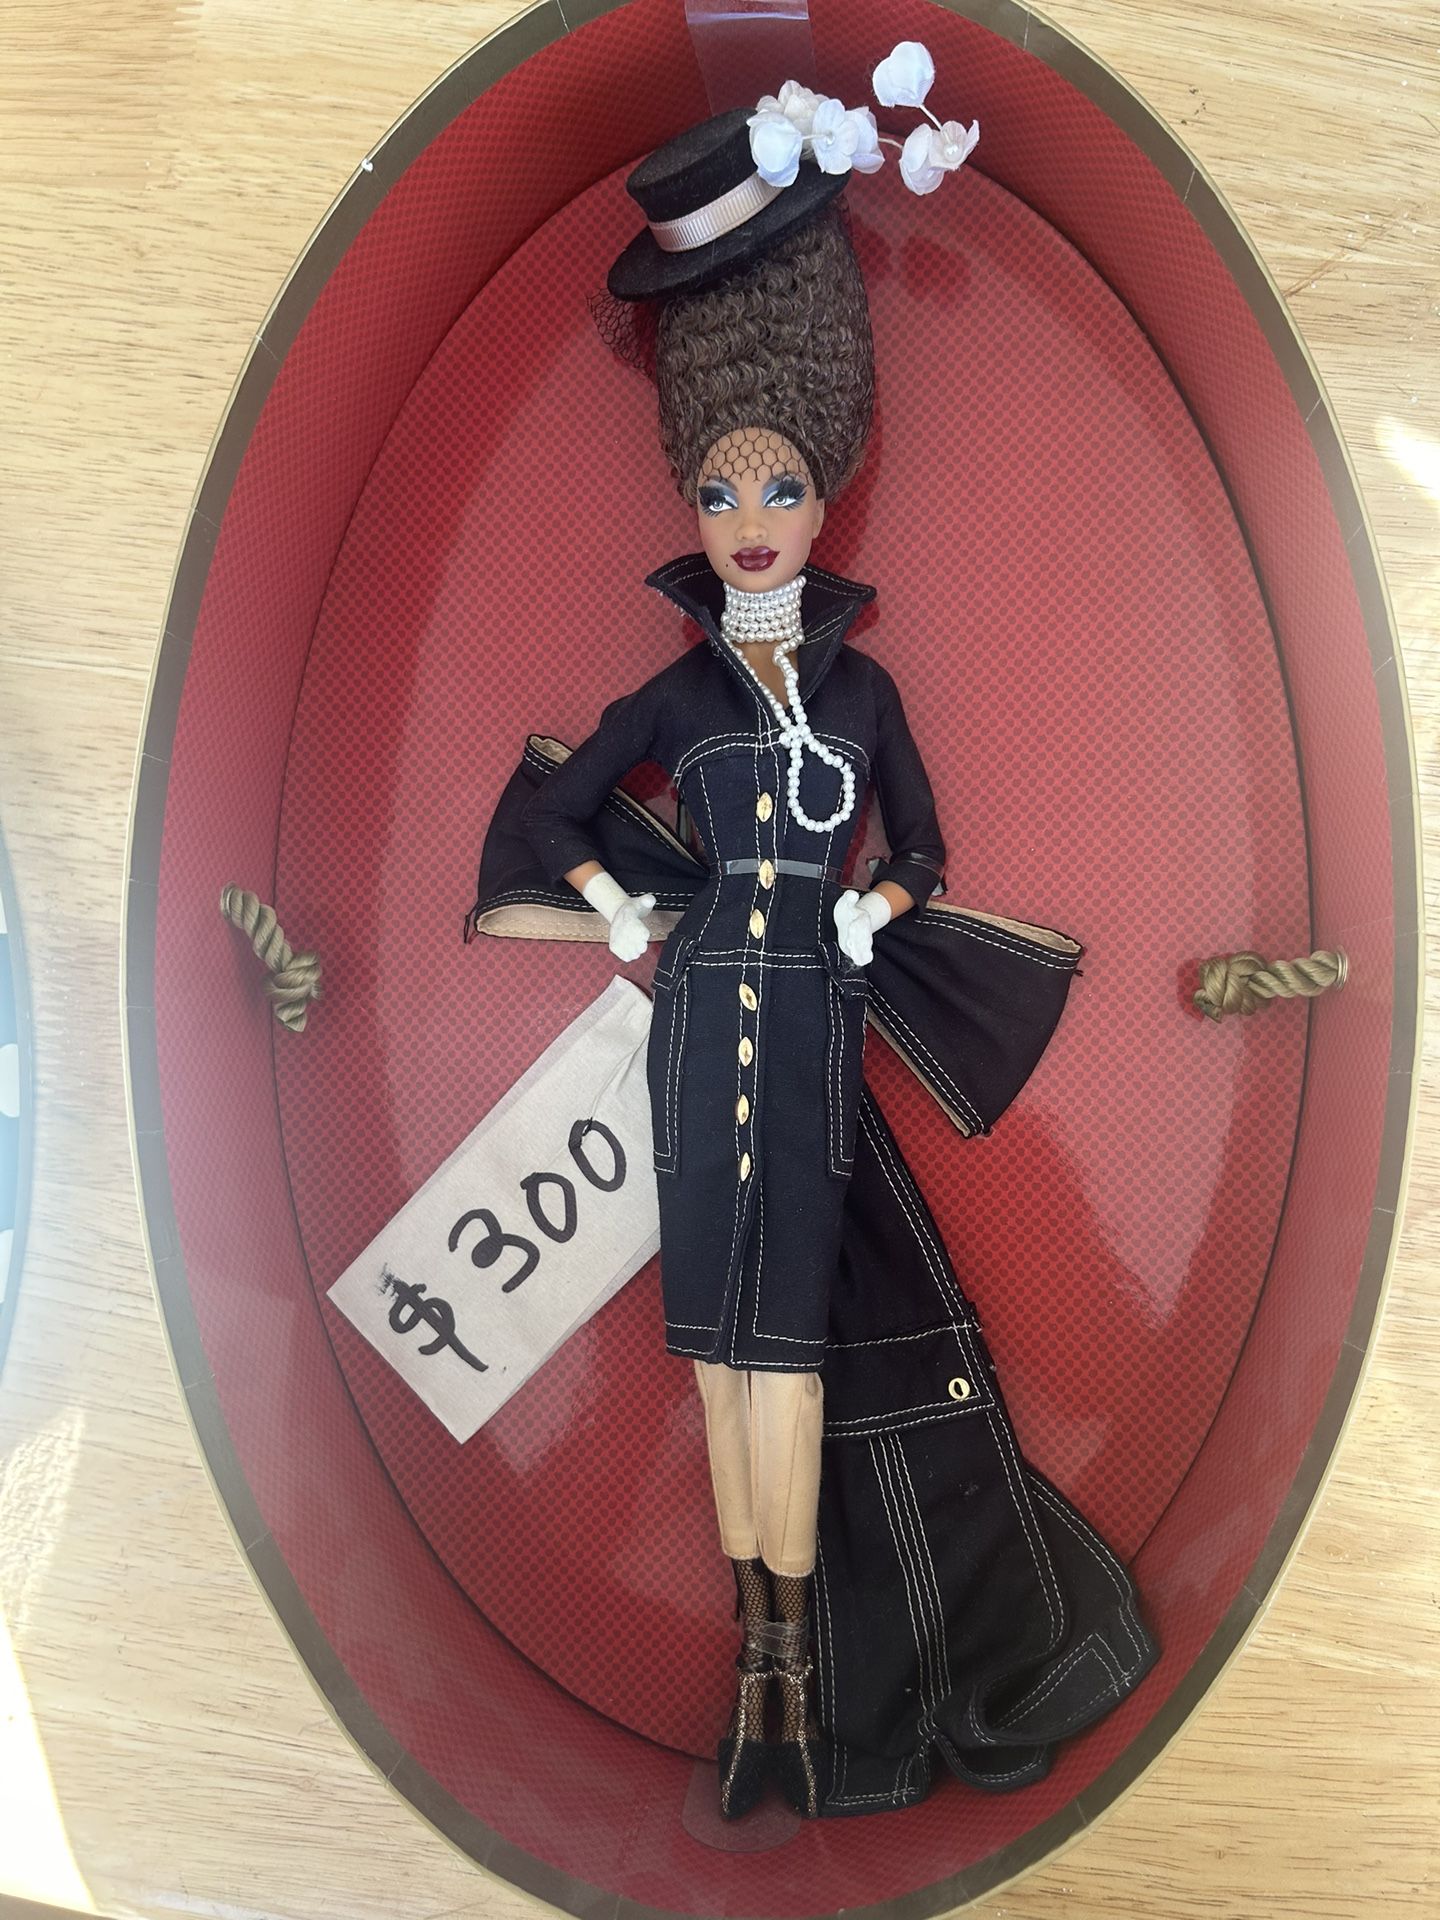  NEW 2007 Byron Lars Pepper Barbie Doll Chapeaux Collection Mattel #L9601